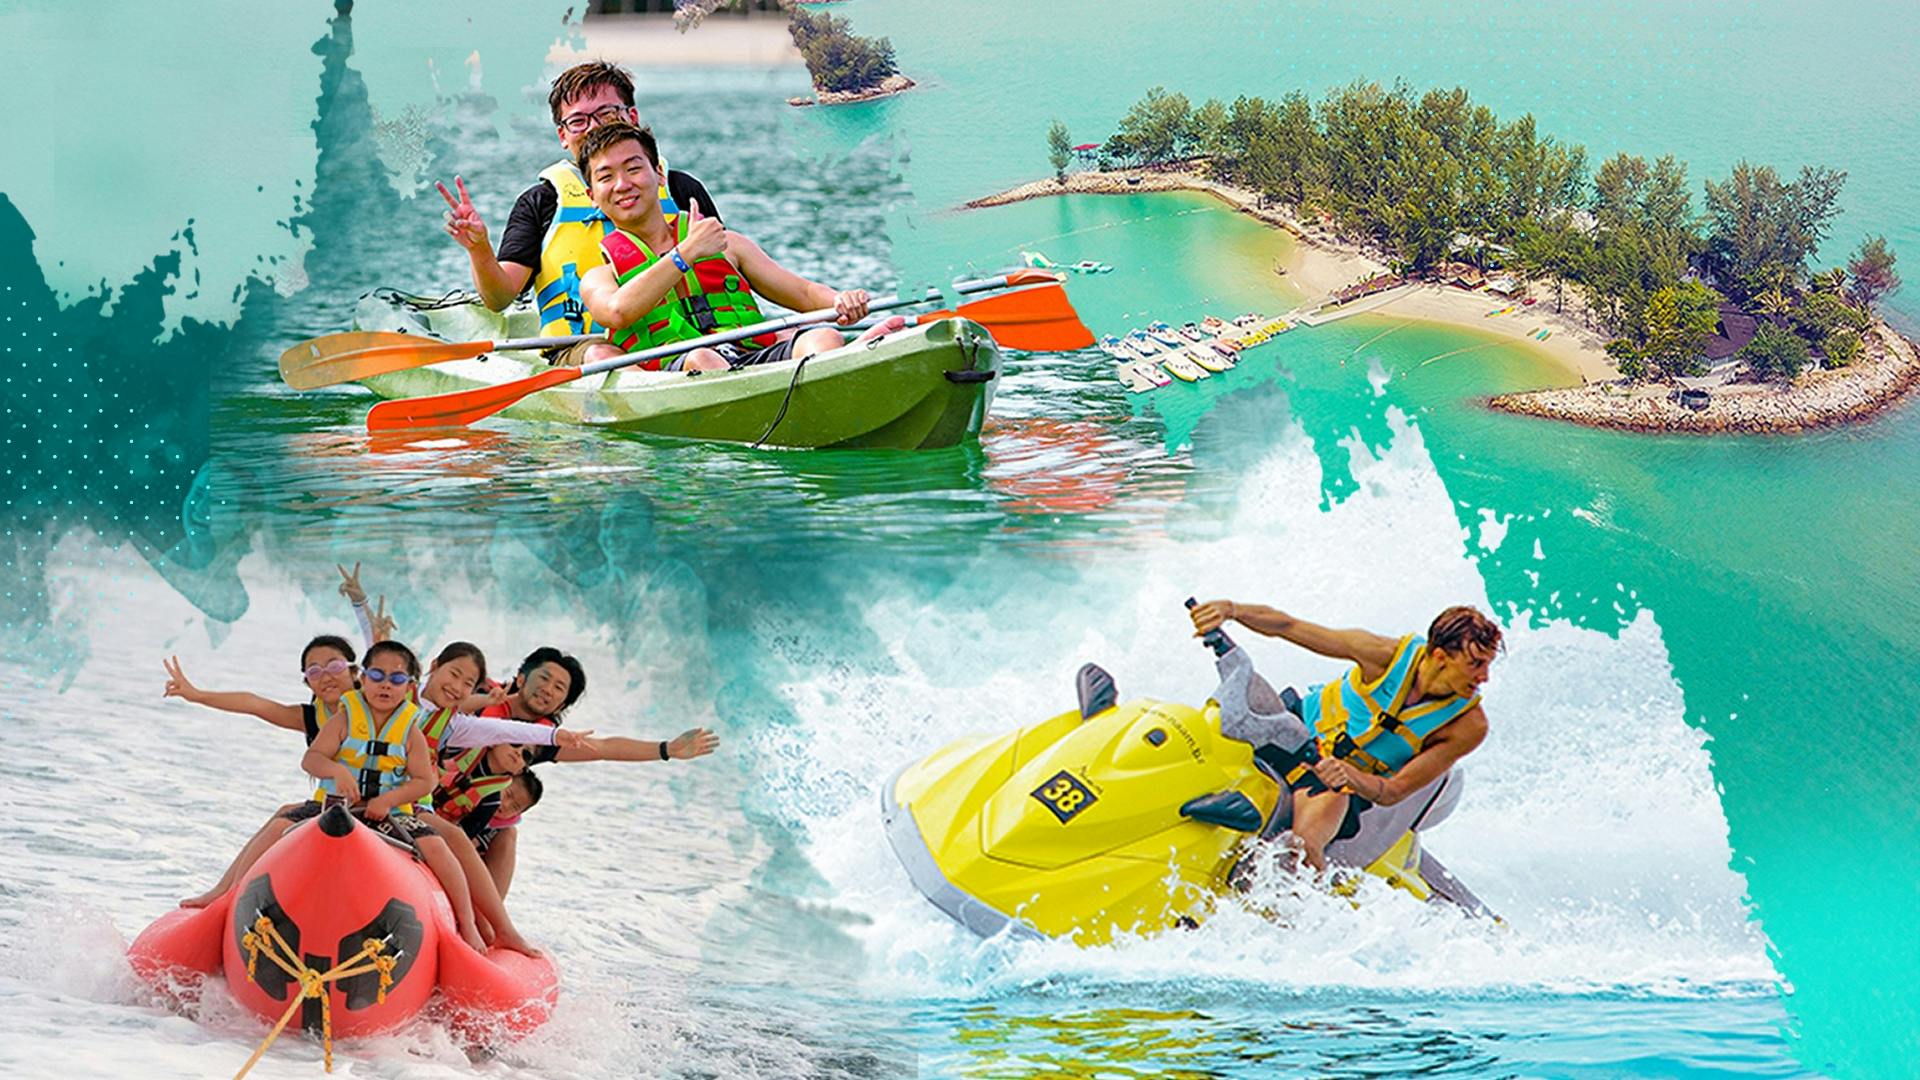 Jet ski and banana boat or 30 minutes Kayaking at Paradise 101